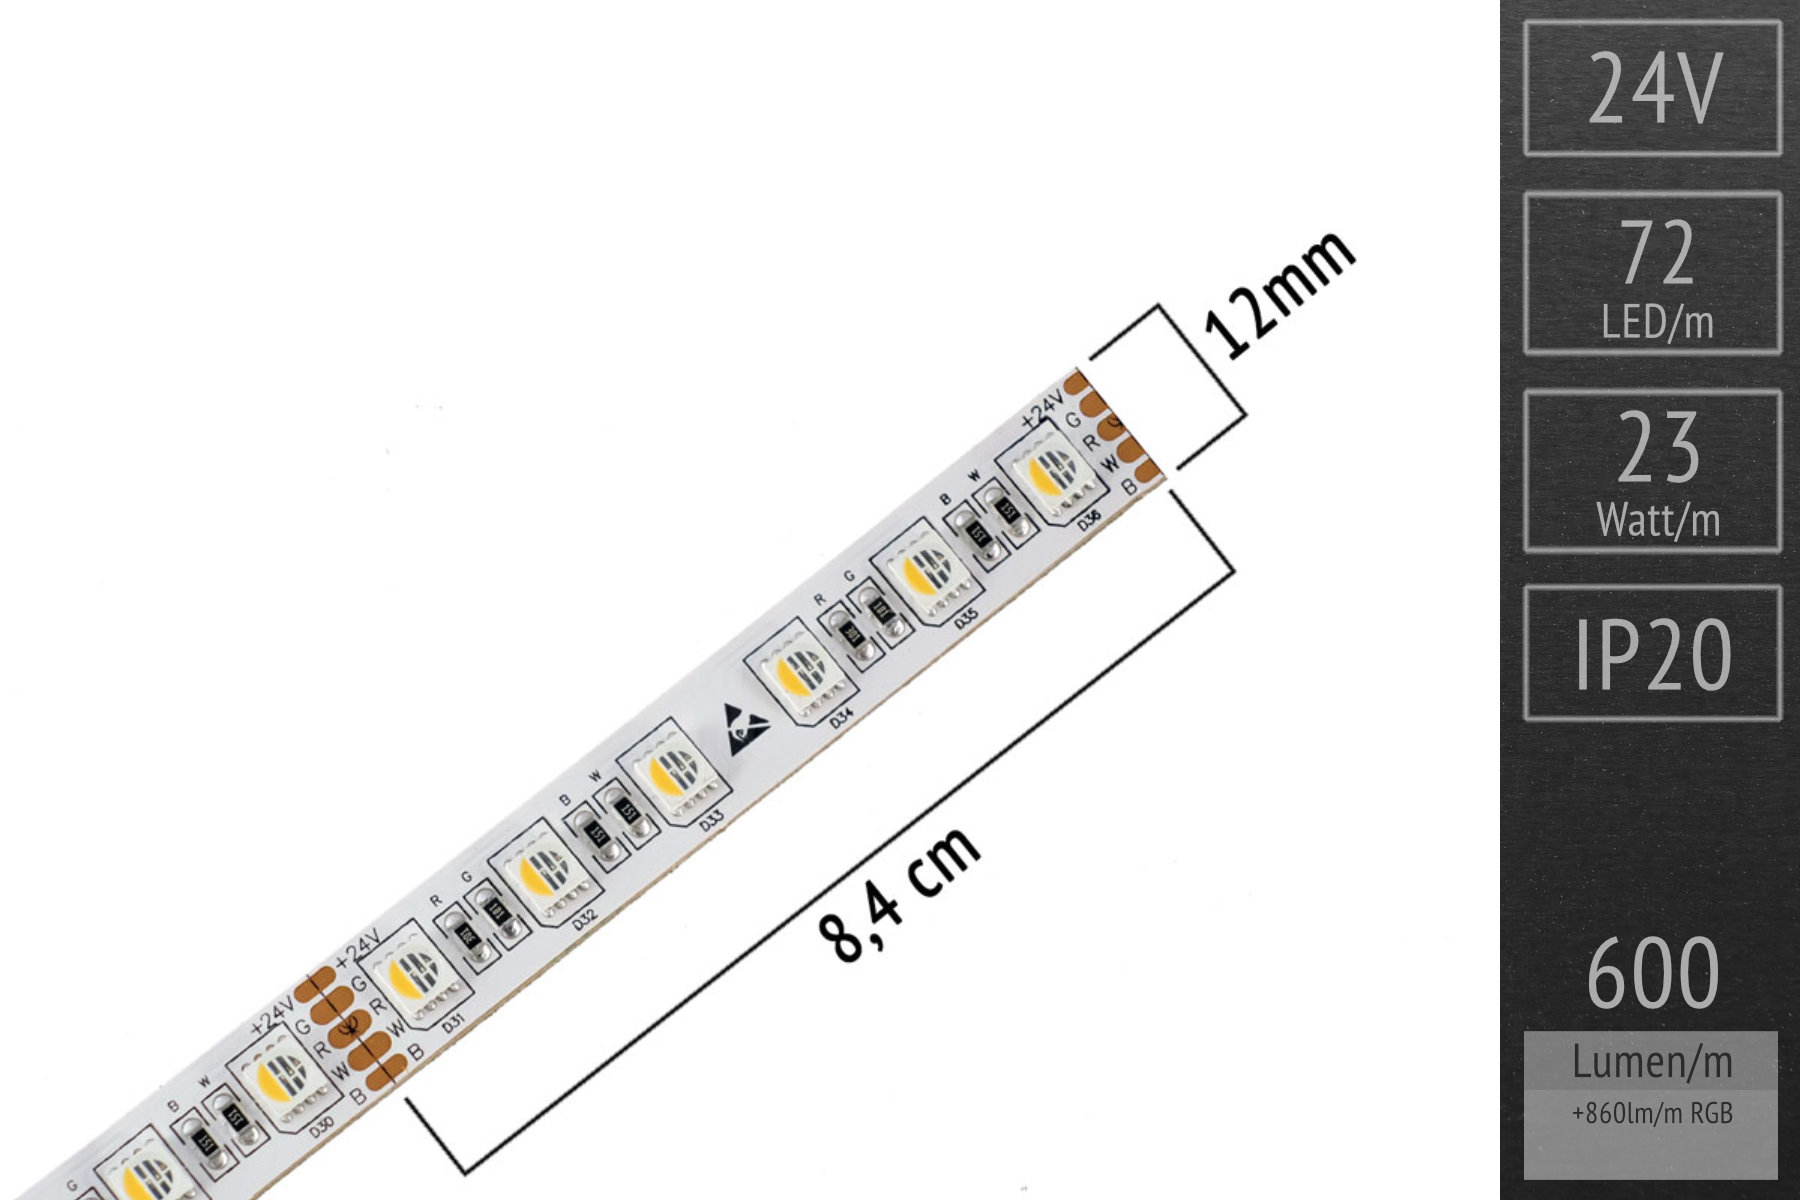 RGBW LED-Set: 20 meters